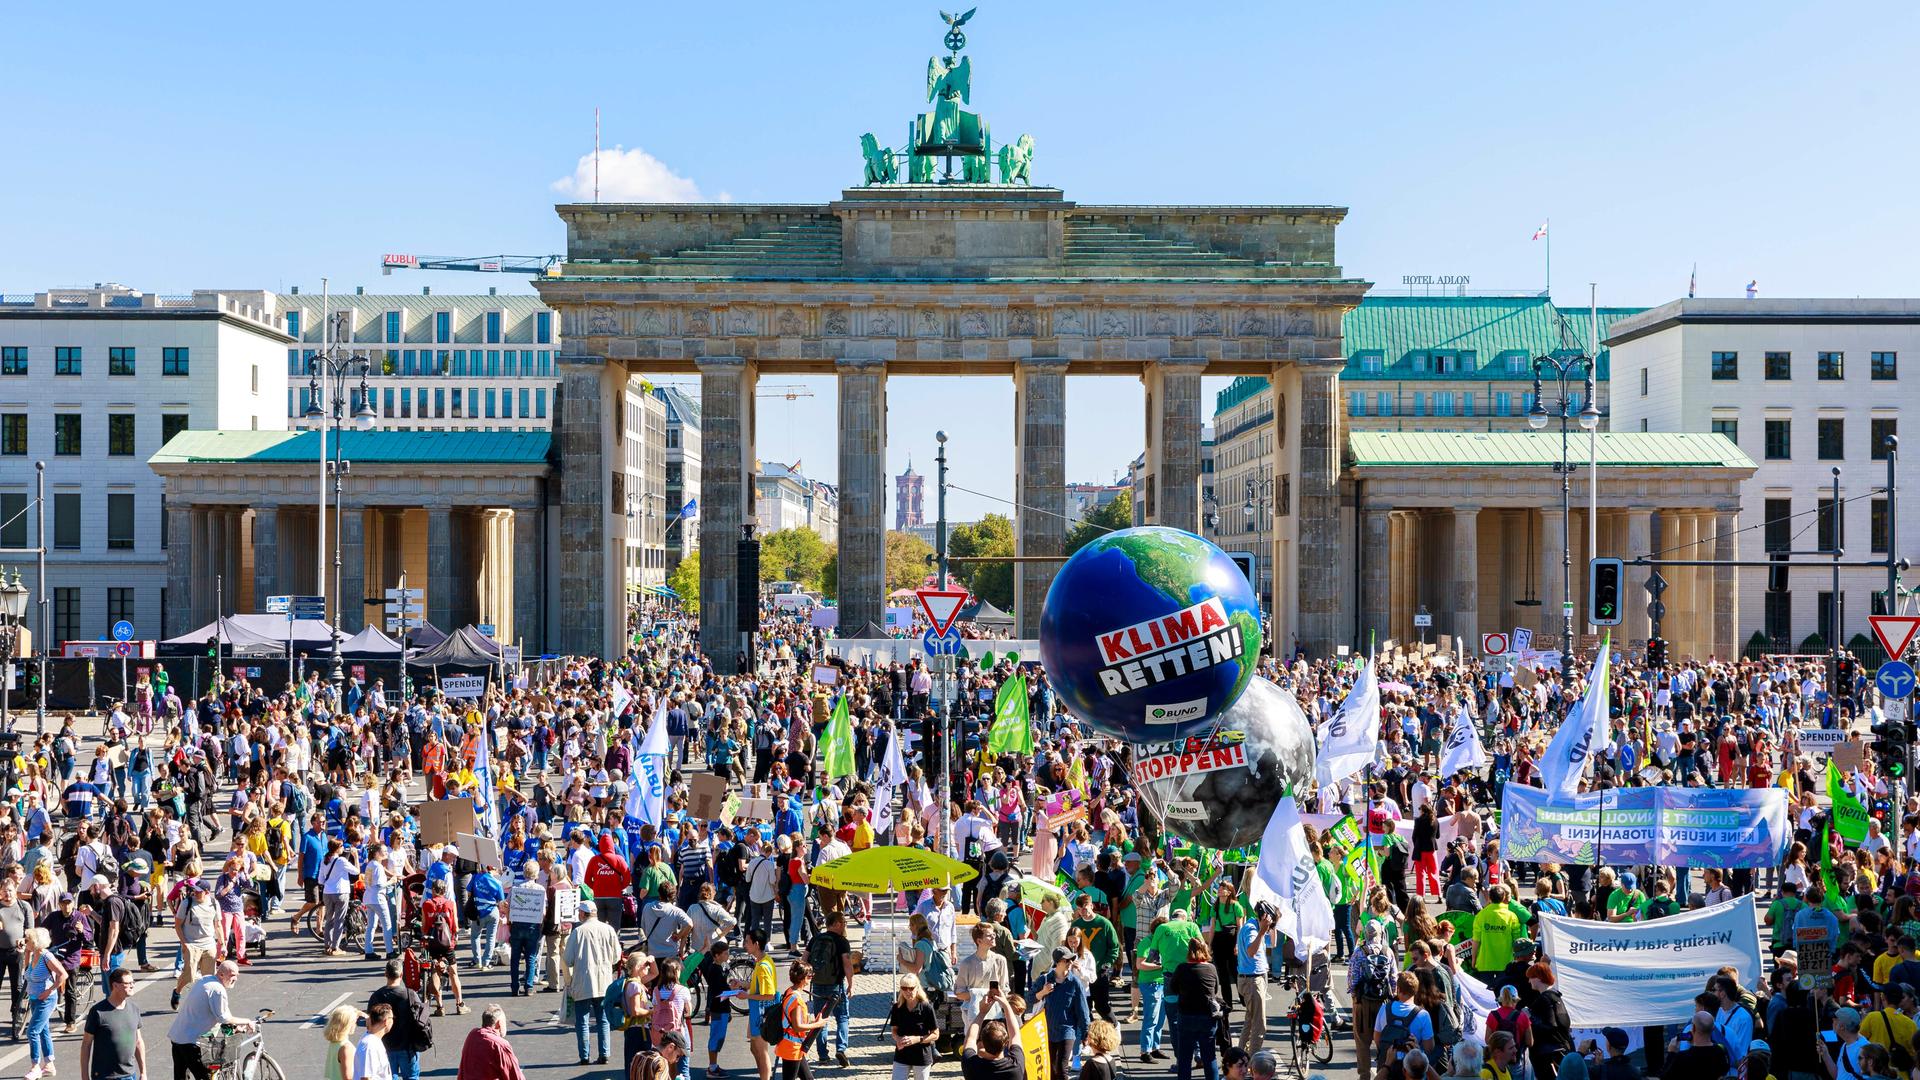 Klimademonstration in Berlin vor dem Brandenburger Tor. Über den Demonstranten schwebt ein großer Ballon mit der Aufschrift "Klima Retten".